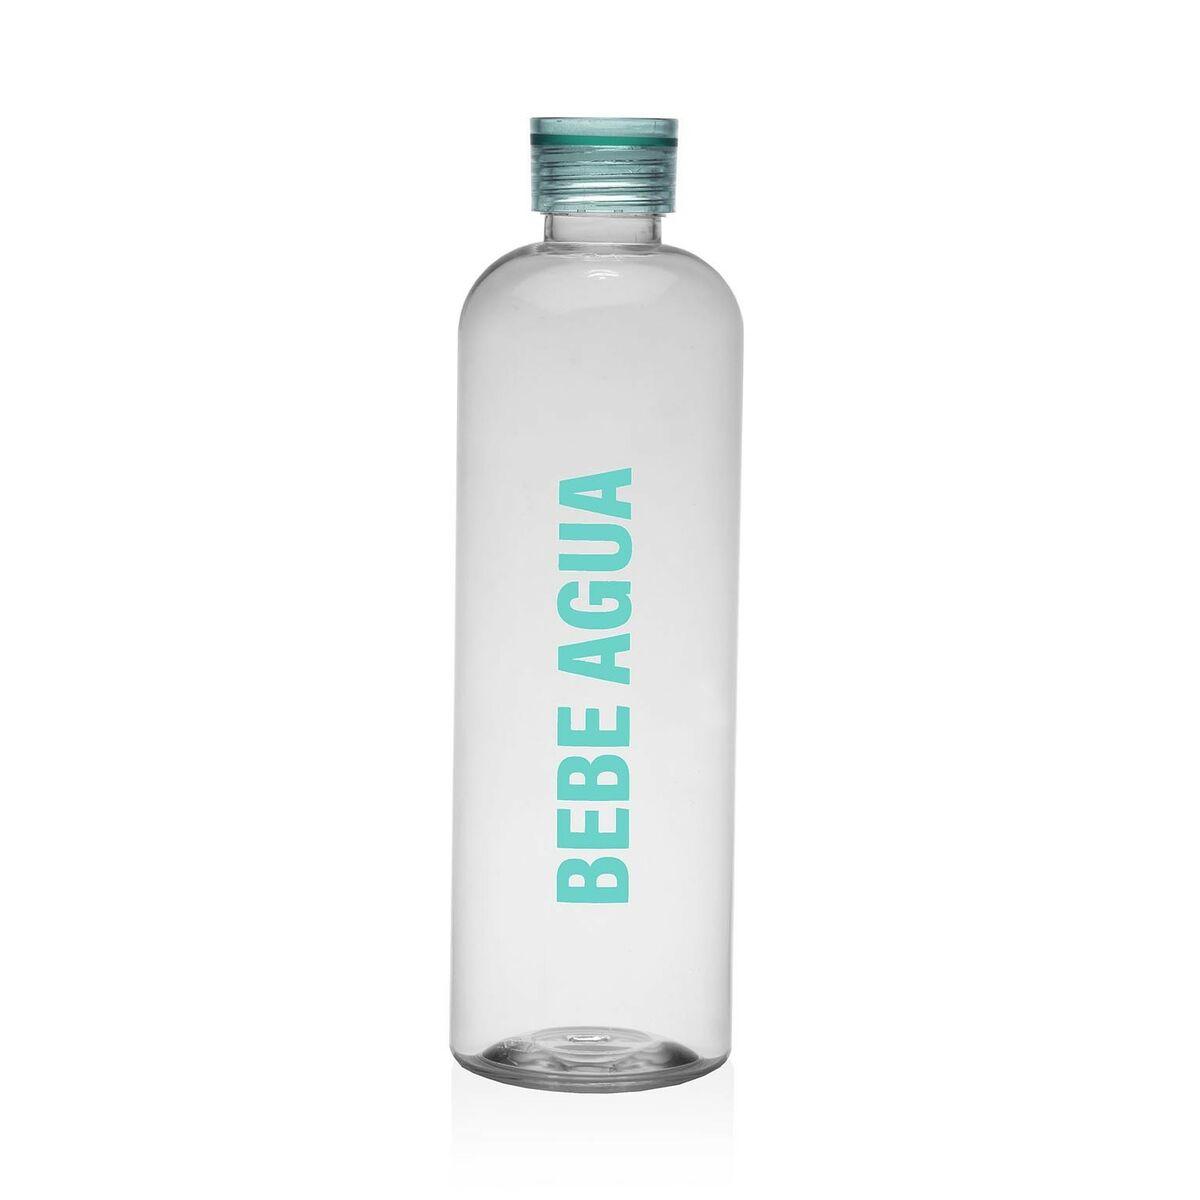 Botella de Agua Versa Menta Acero Poliestireno 1,5 L 9 x 29 x 9 cm